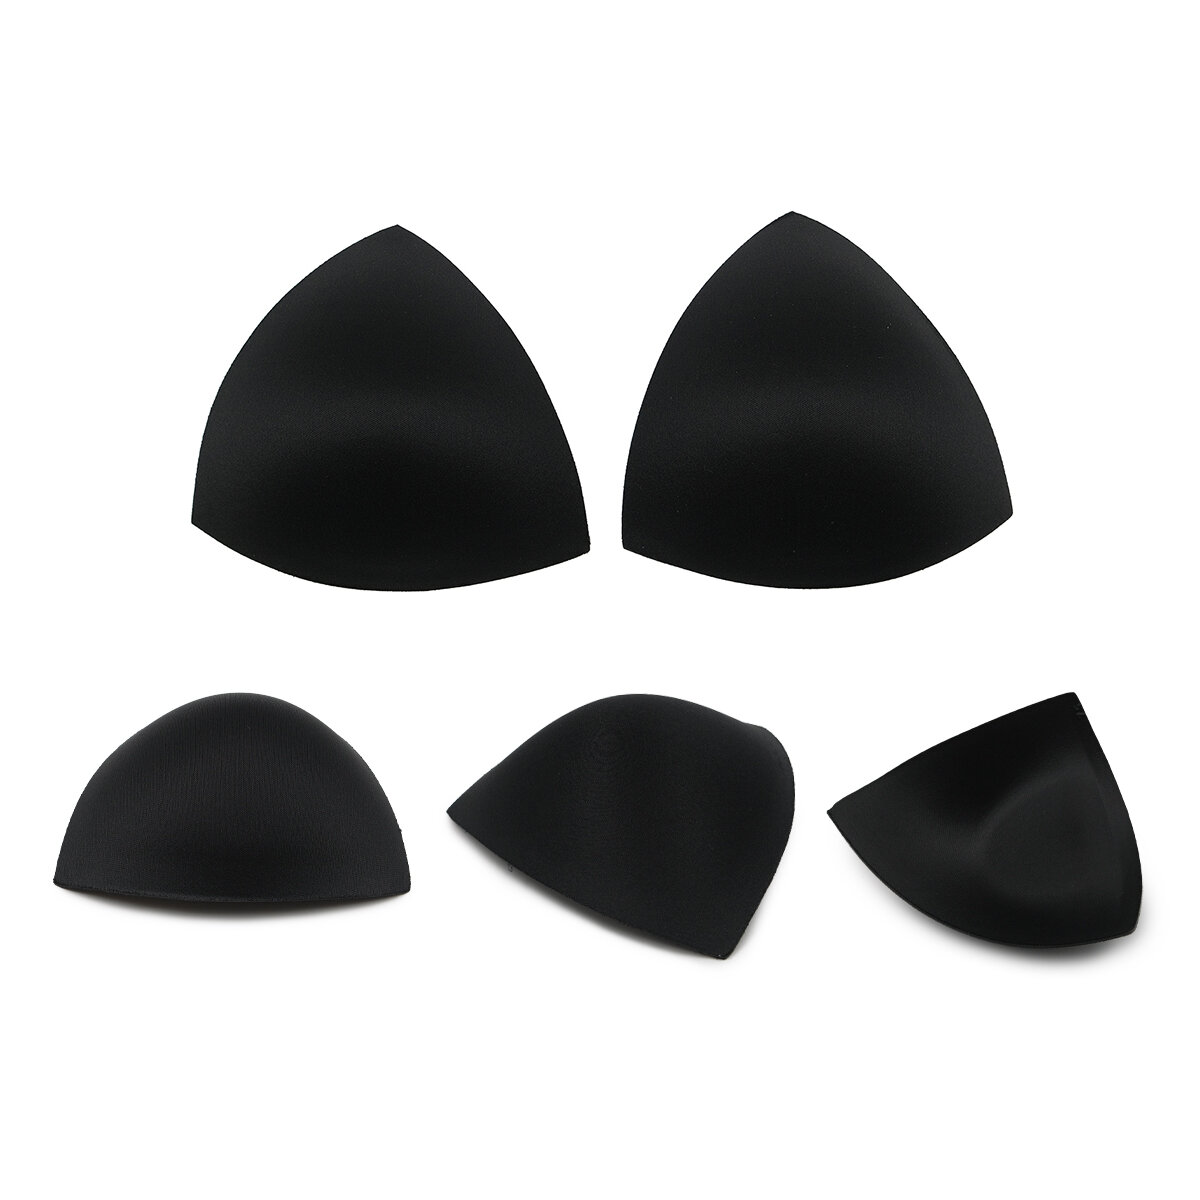 Чашечки для бюстгальтера Antynea, треугольные, без уступа, с наполнением и эффектом push-up, FC-72.18 (72.88,72.78), размер 80 (черный), 1 пара